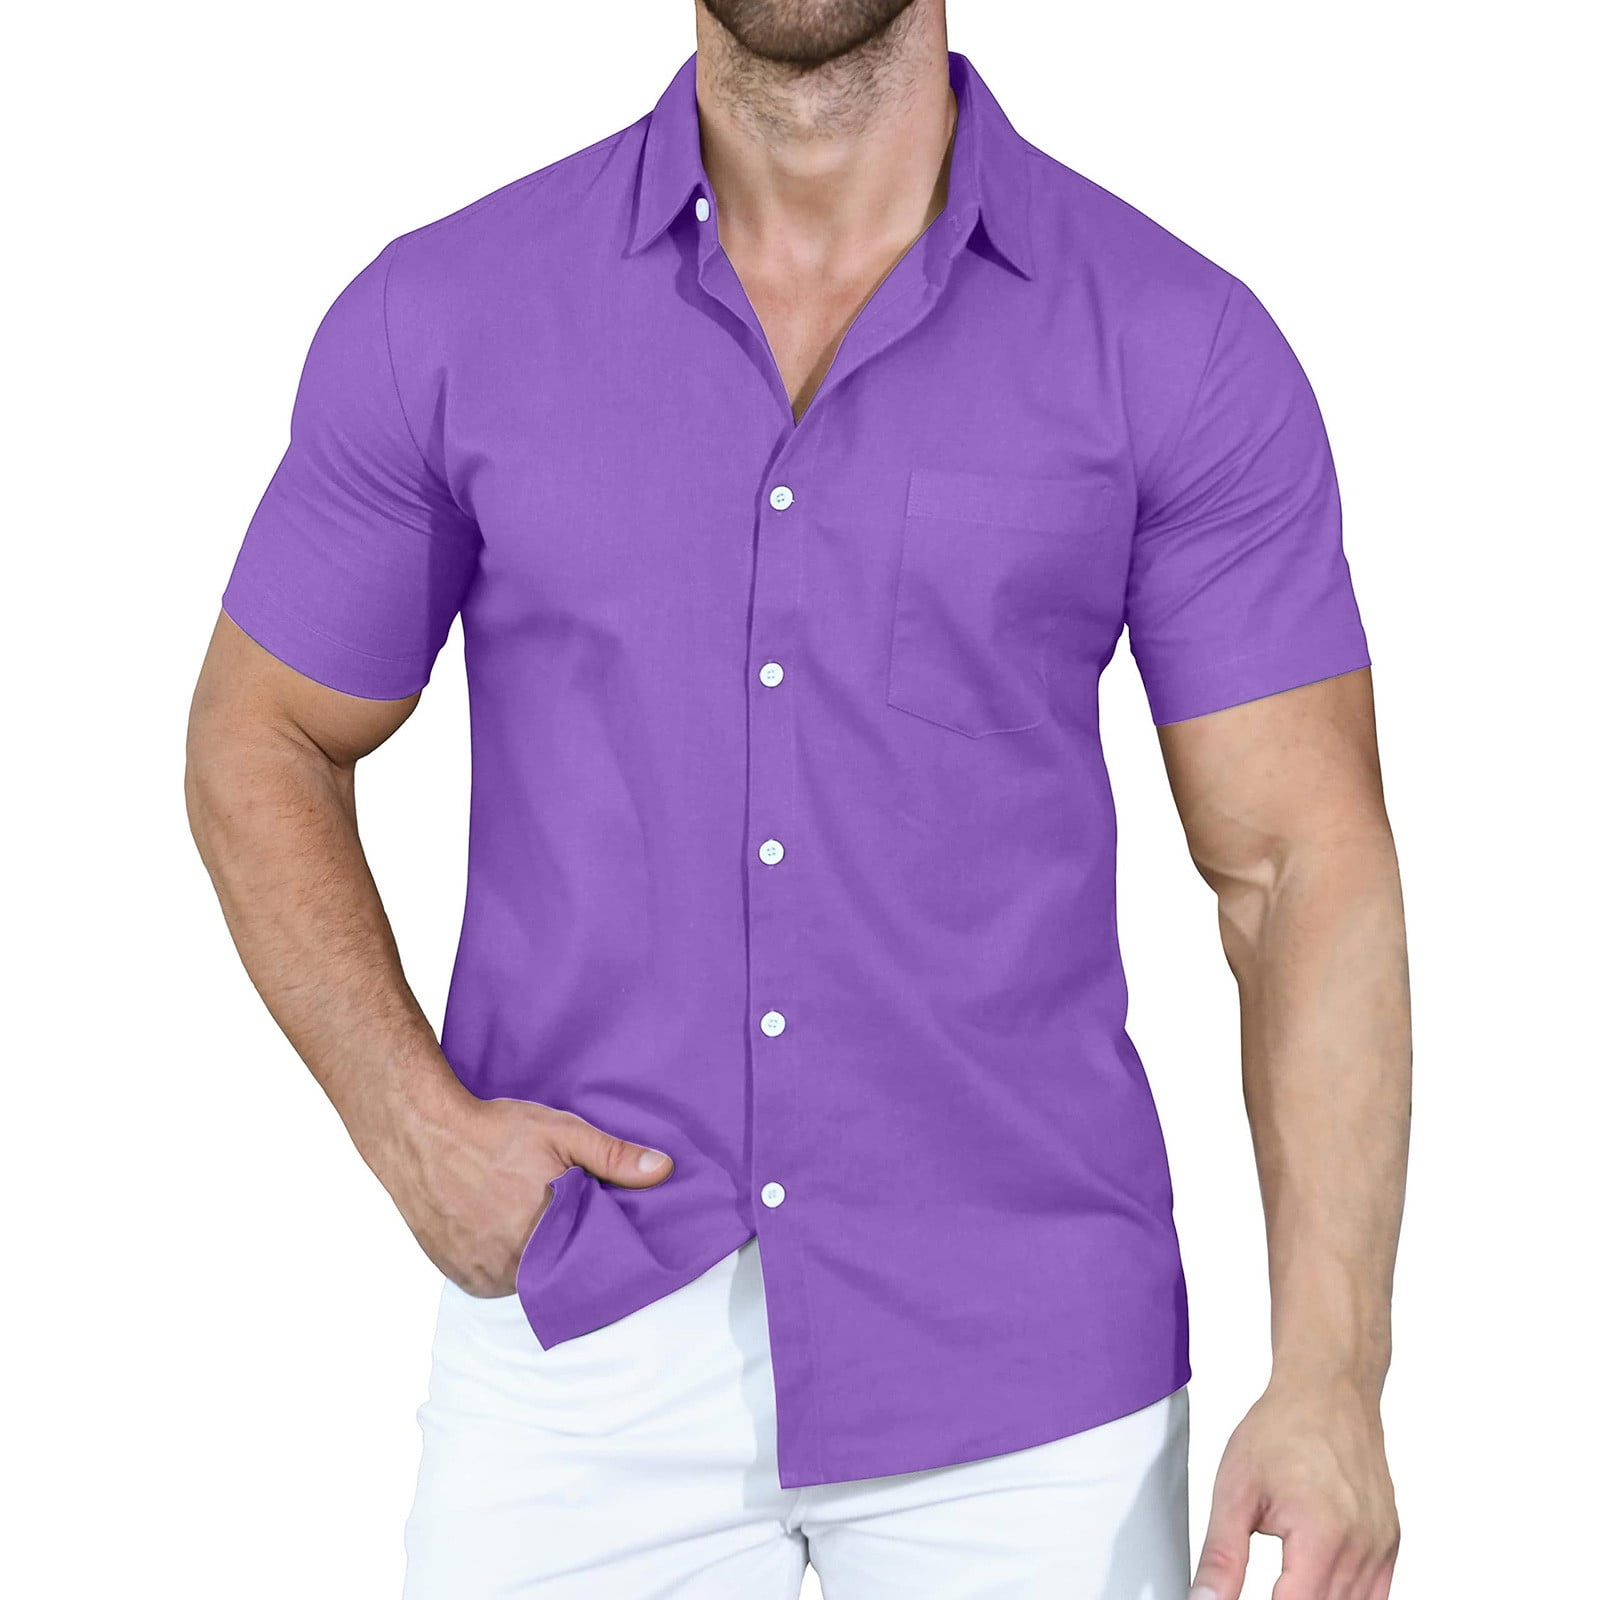 RYRJJ Men's Short Sleeve Button Up Linen Shirts Summer Casual Pocket ...